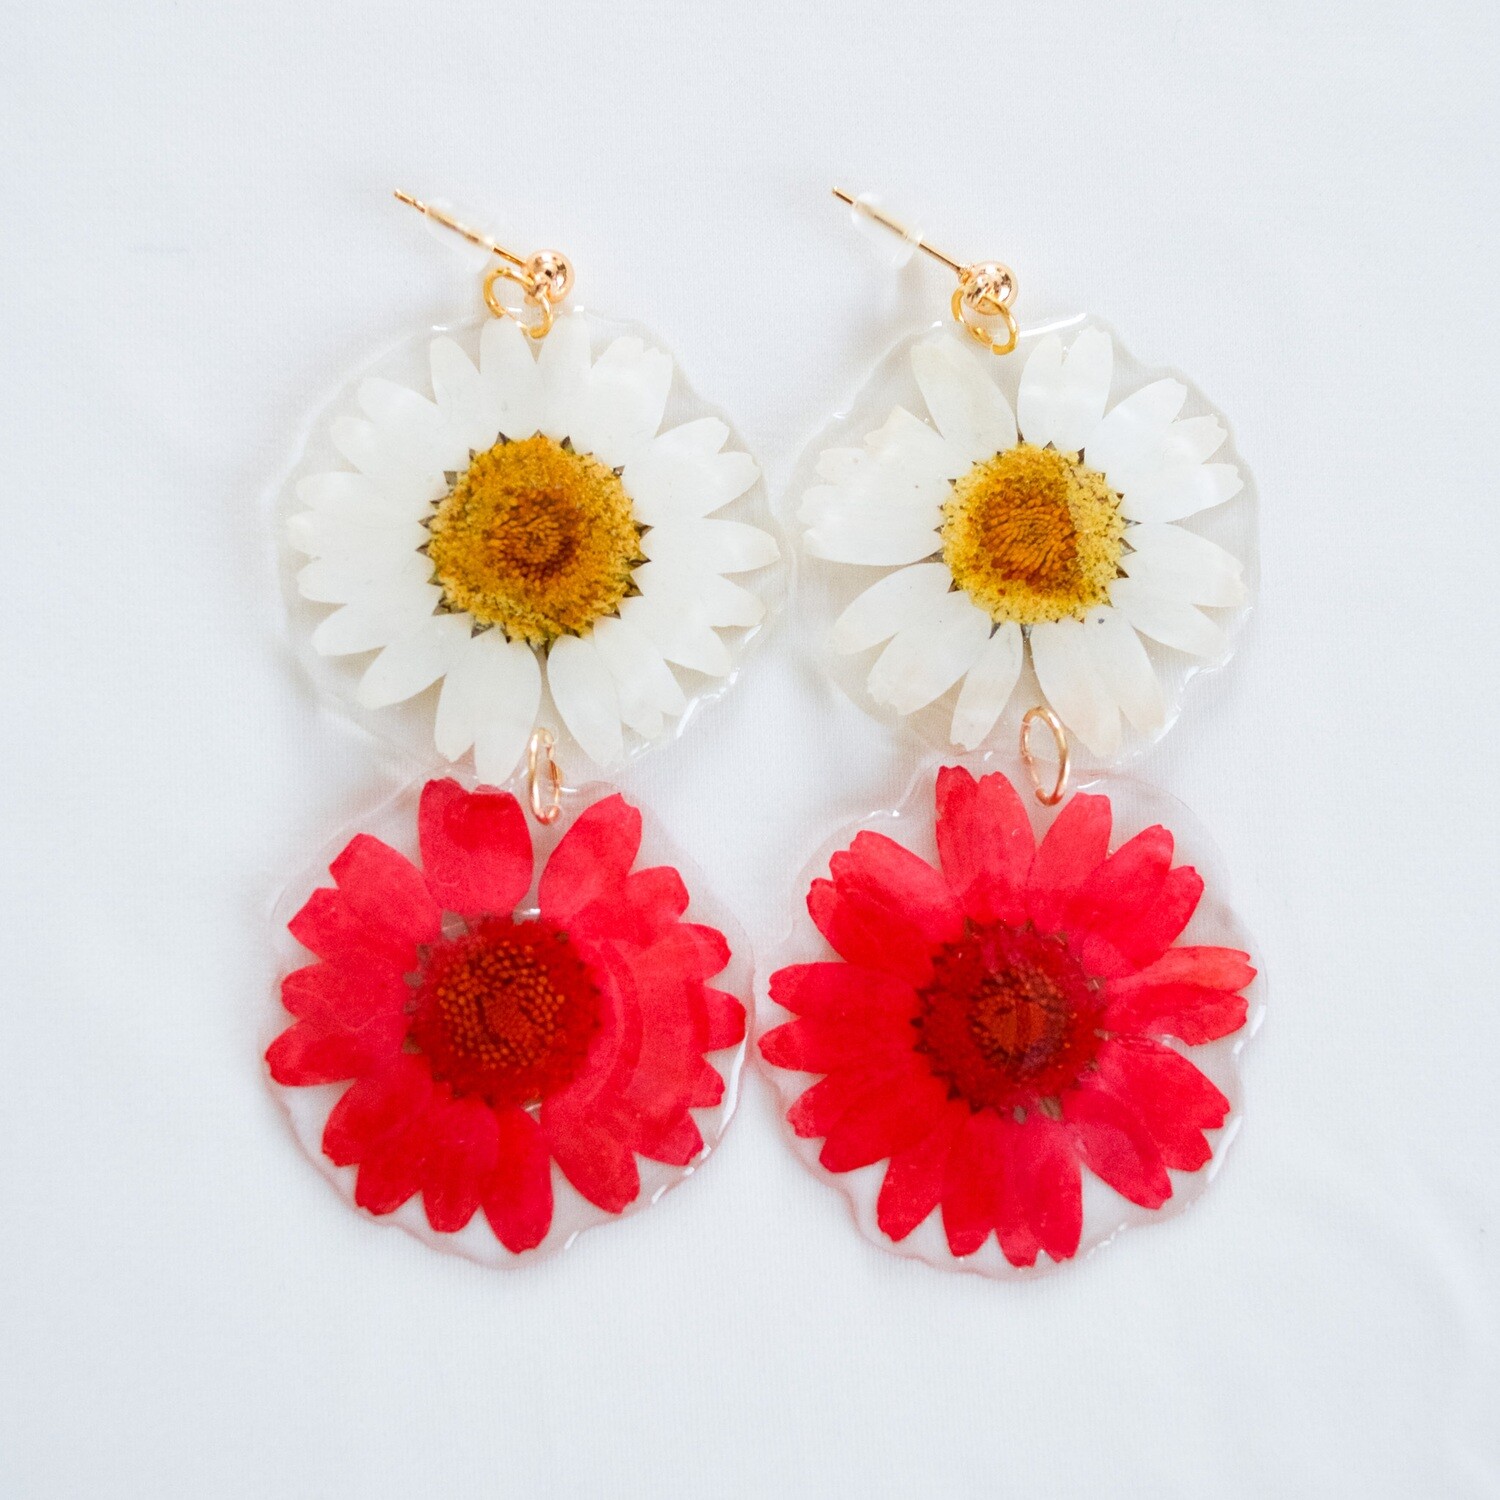 White & pink daisy earrings